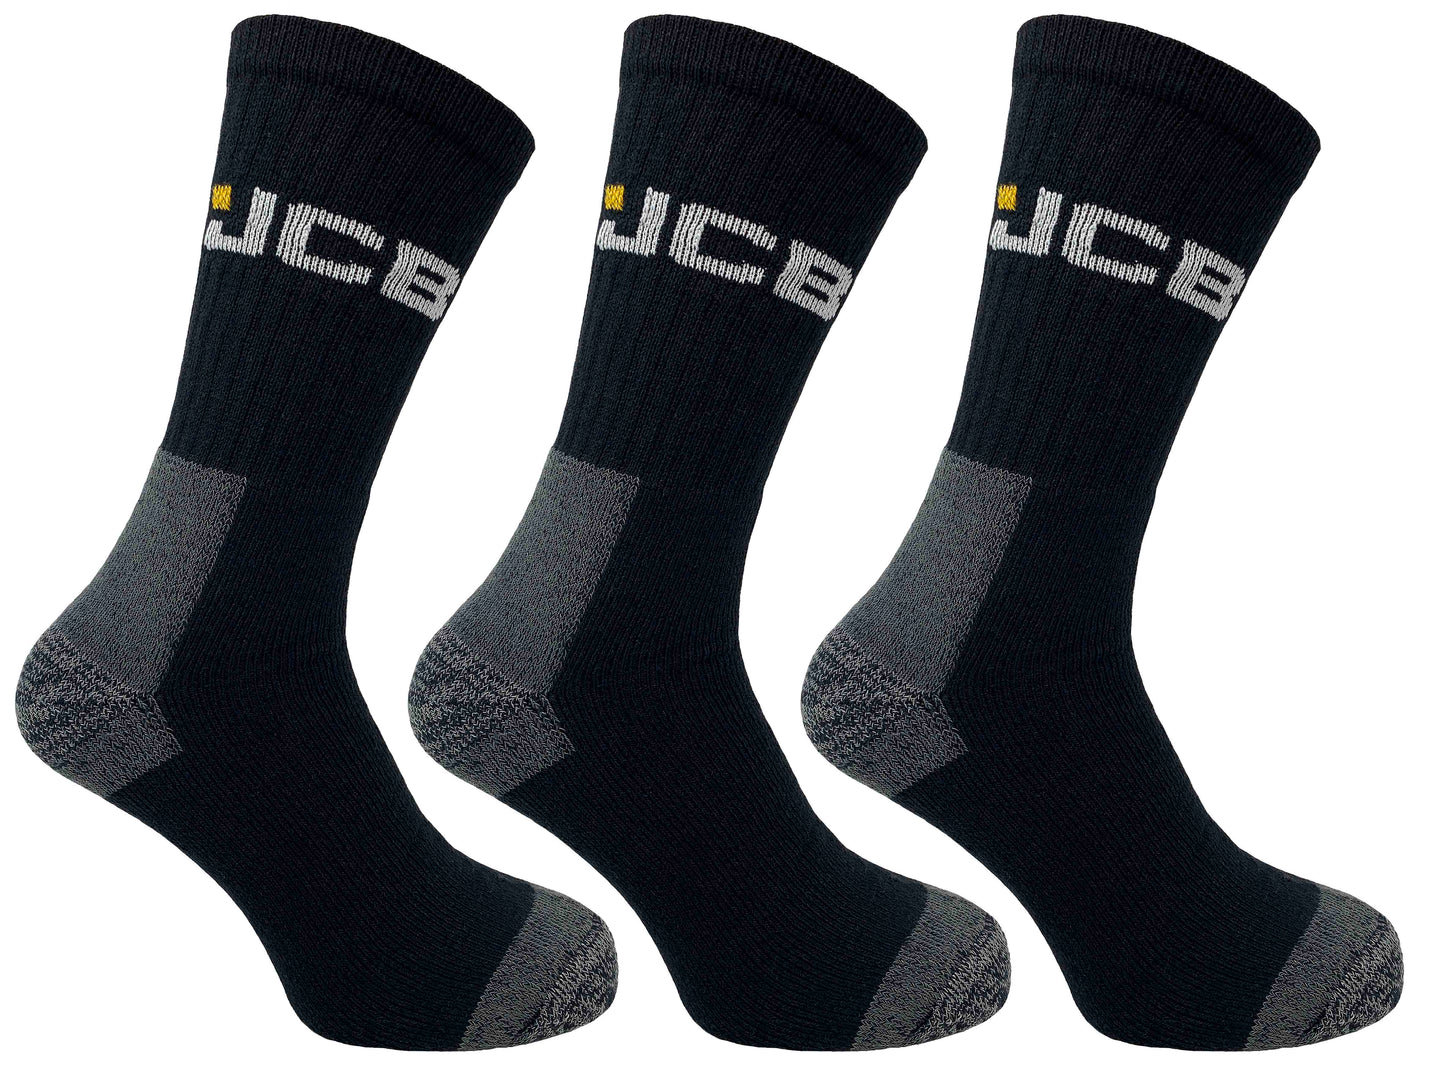 JCB Work Socks Black Pack of 3